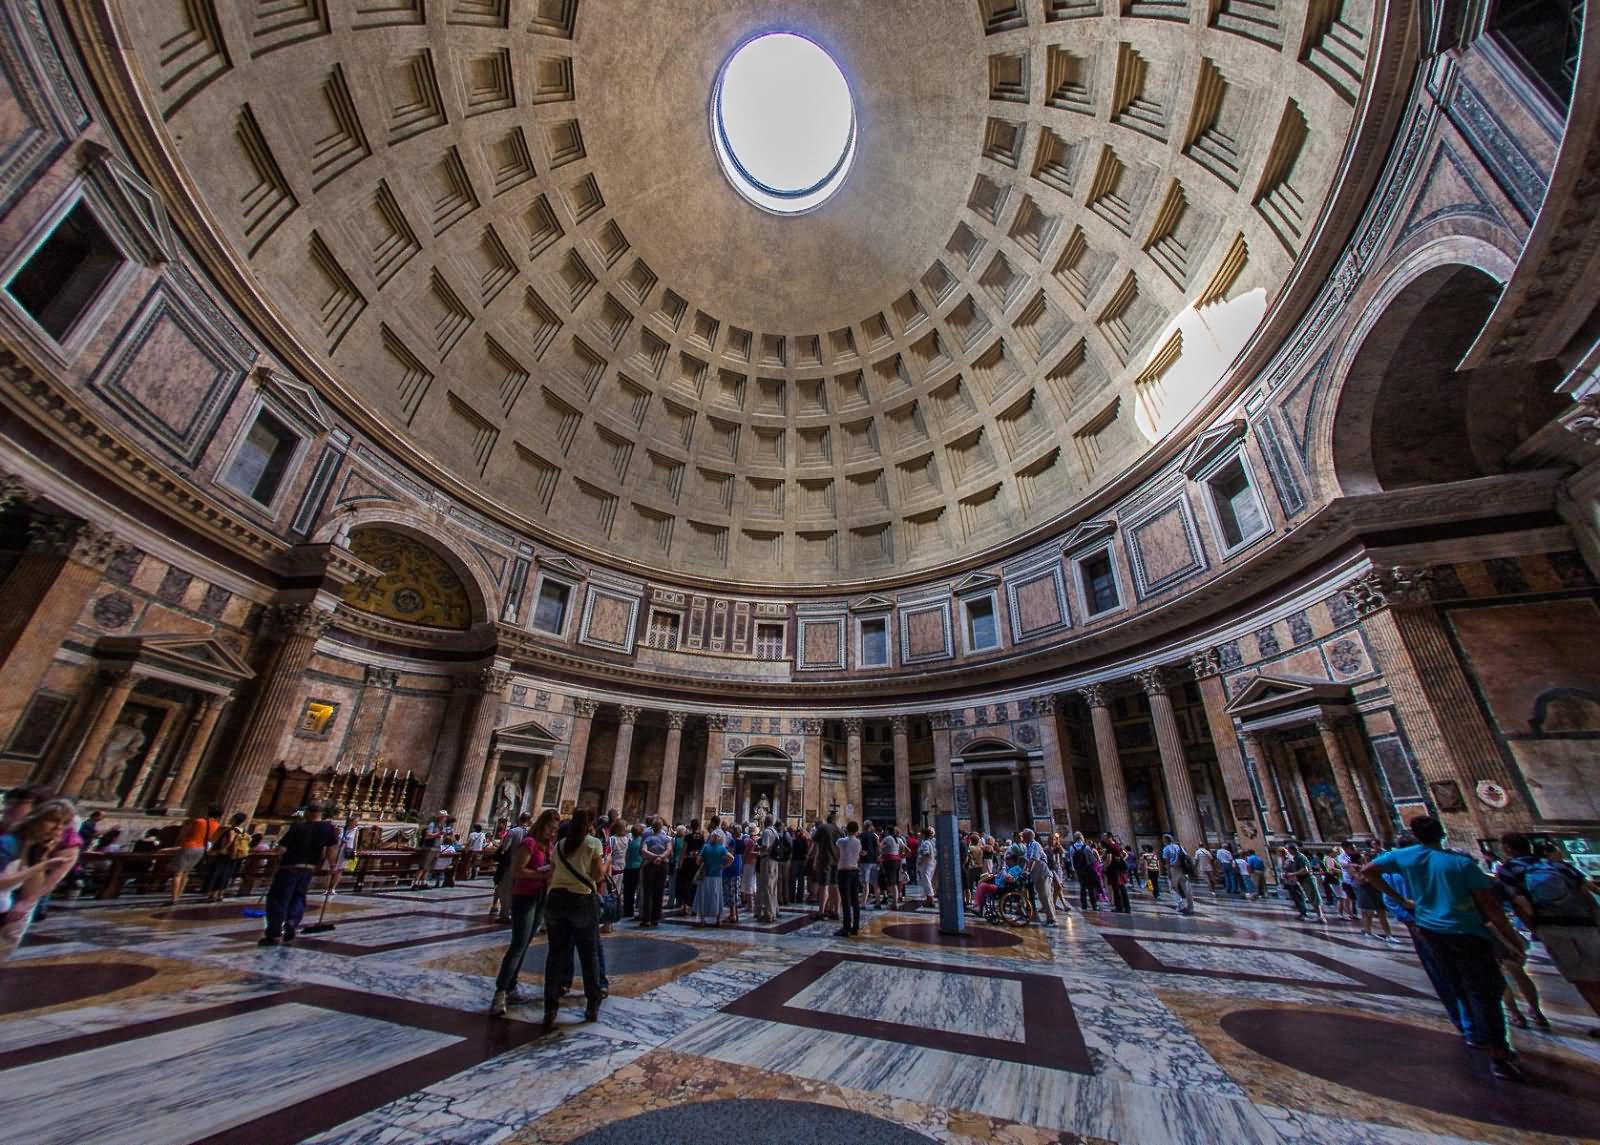 Beautiful Dome Inside Pantheon